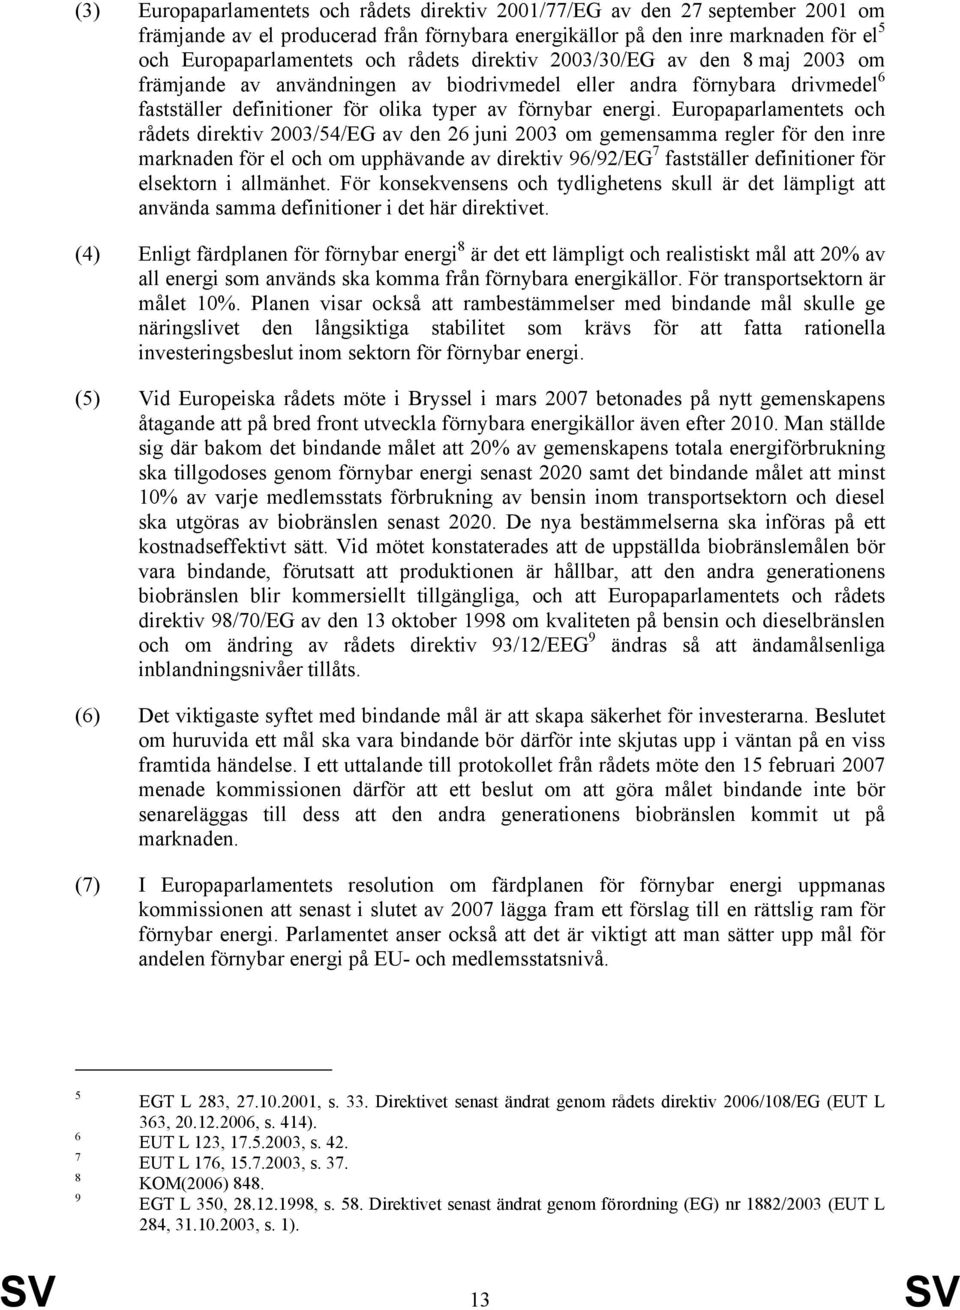 Europaparlamentets och rådets direktiv 2003/54/EG av den 26 juni 2003 om gemensamma regler för den inre marknaden för el och om upphävande av direktiv 96/92/EG 7 fastställer definitioner för